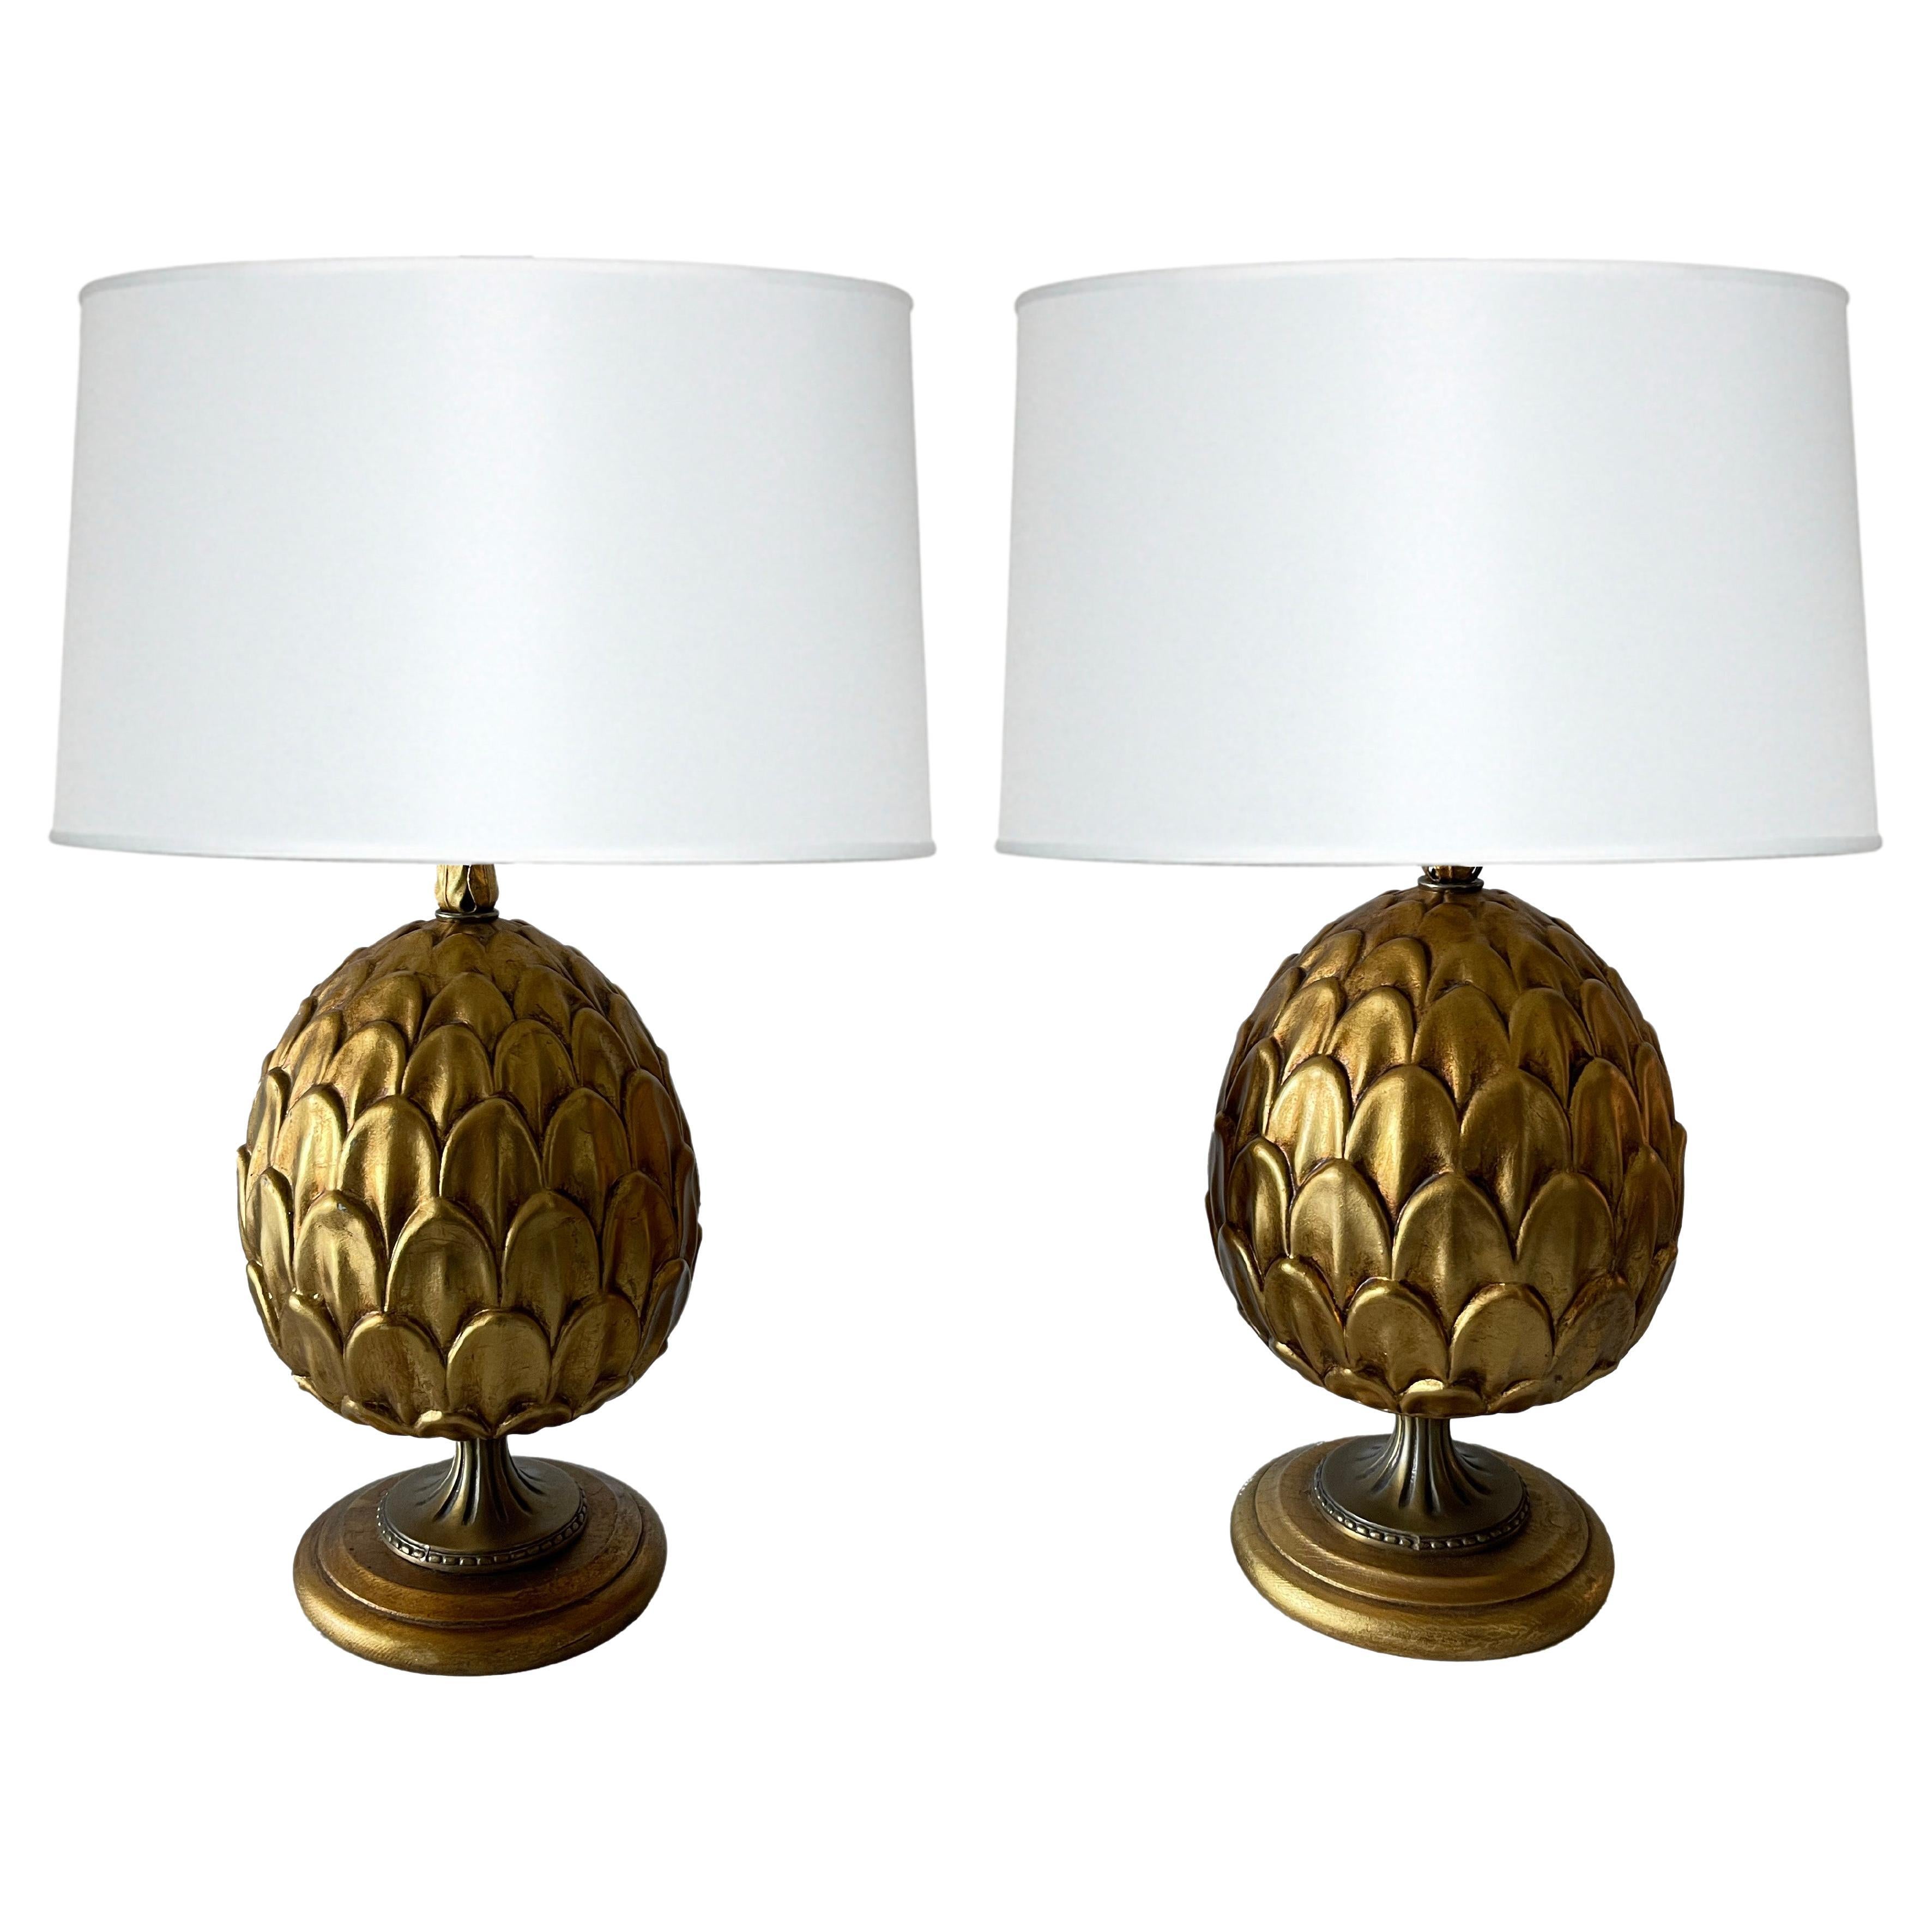 Pair of Italian Gilt Metal Artichoke Lamps